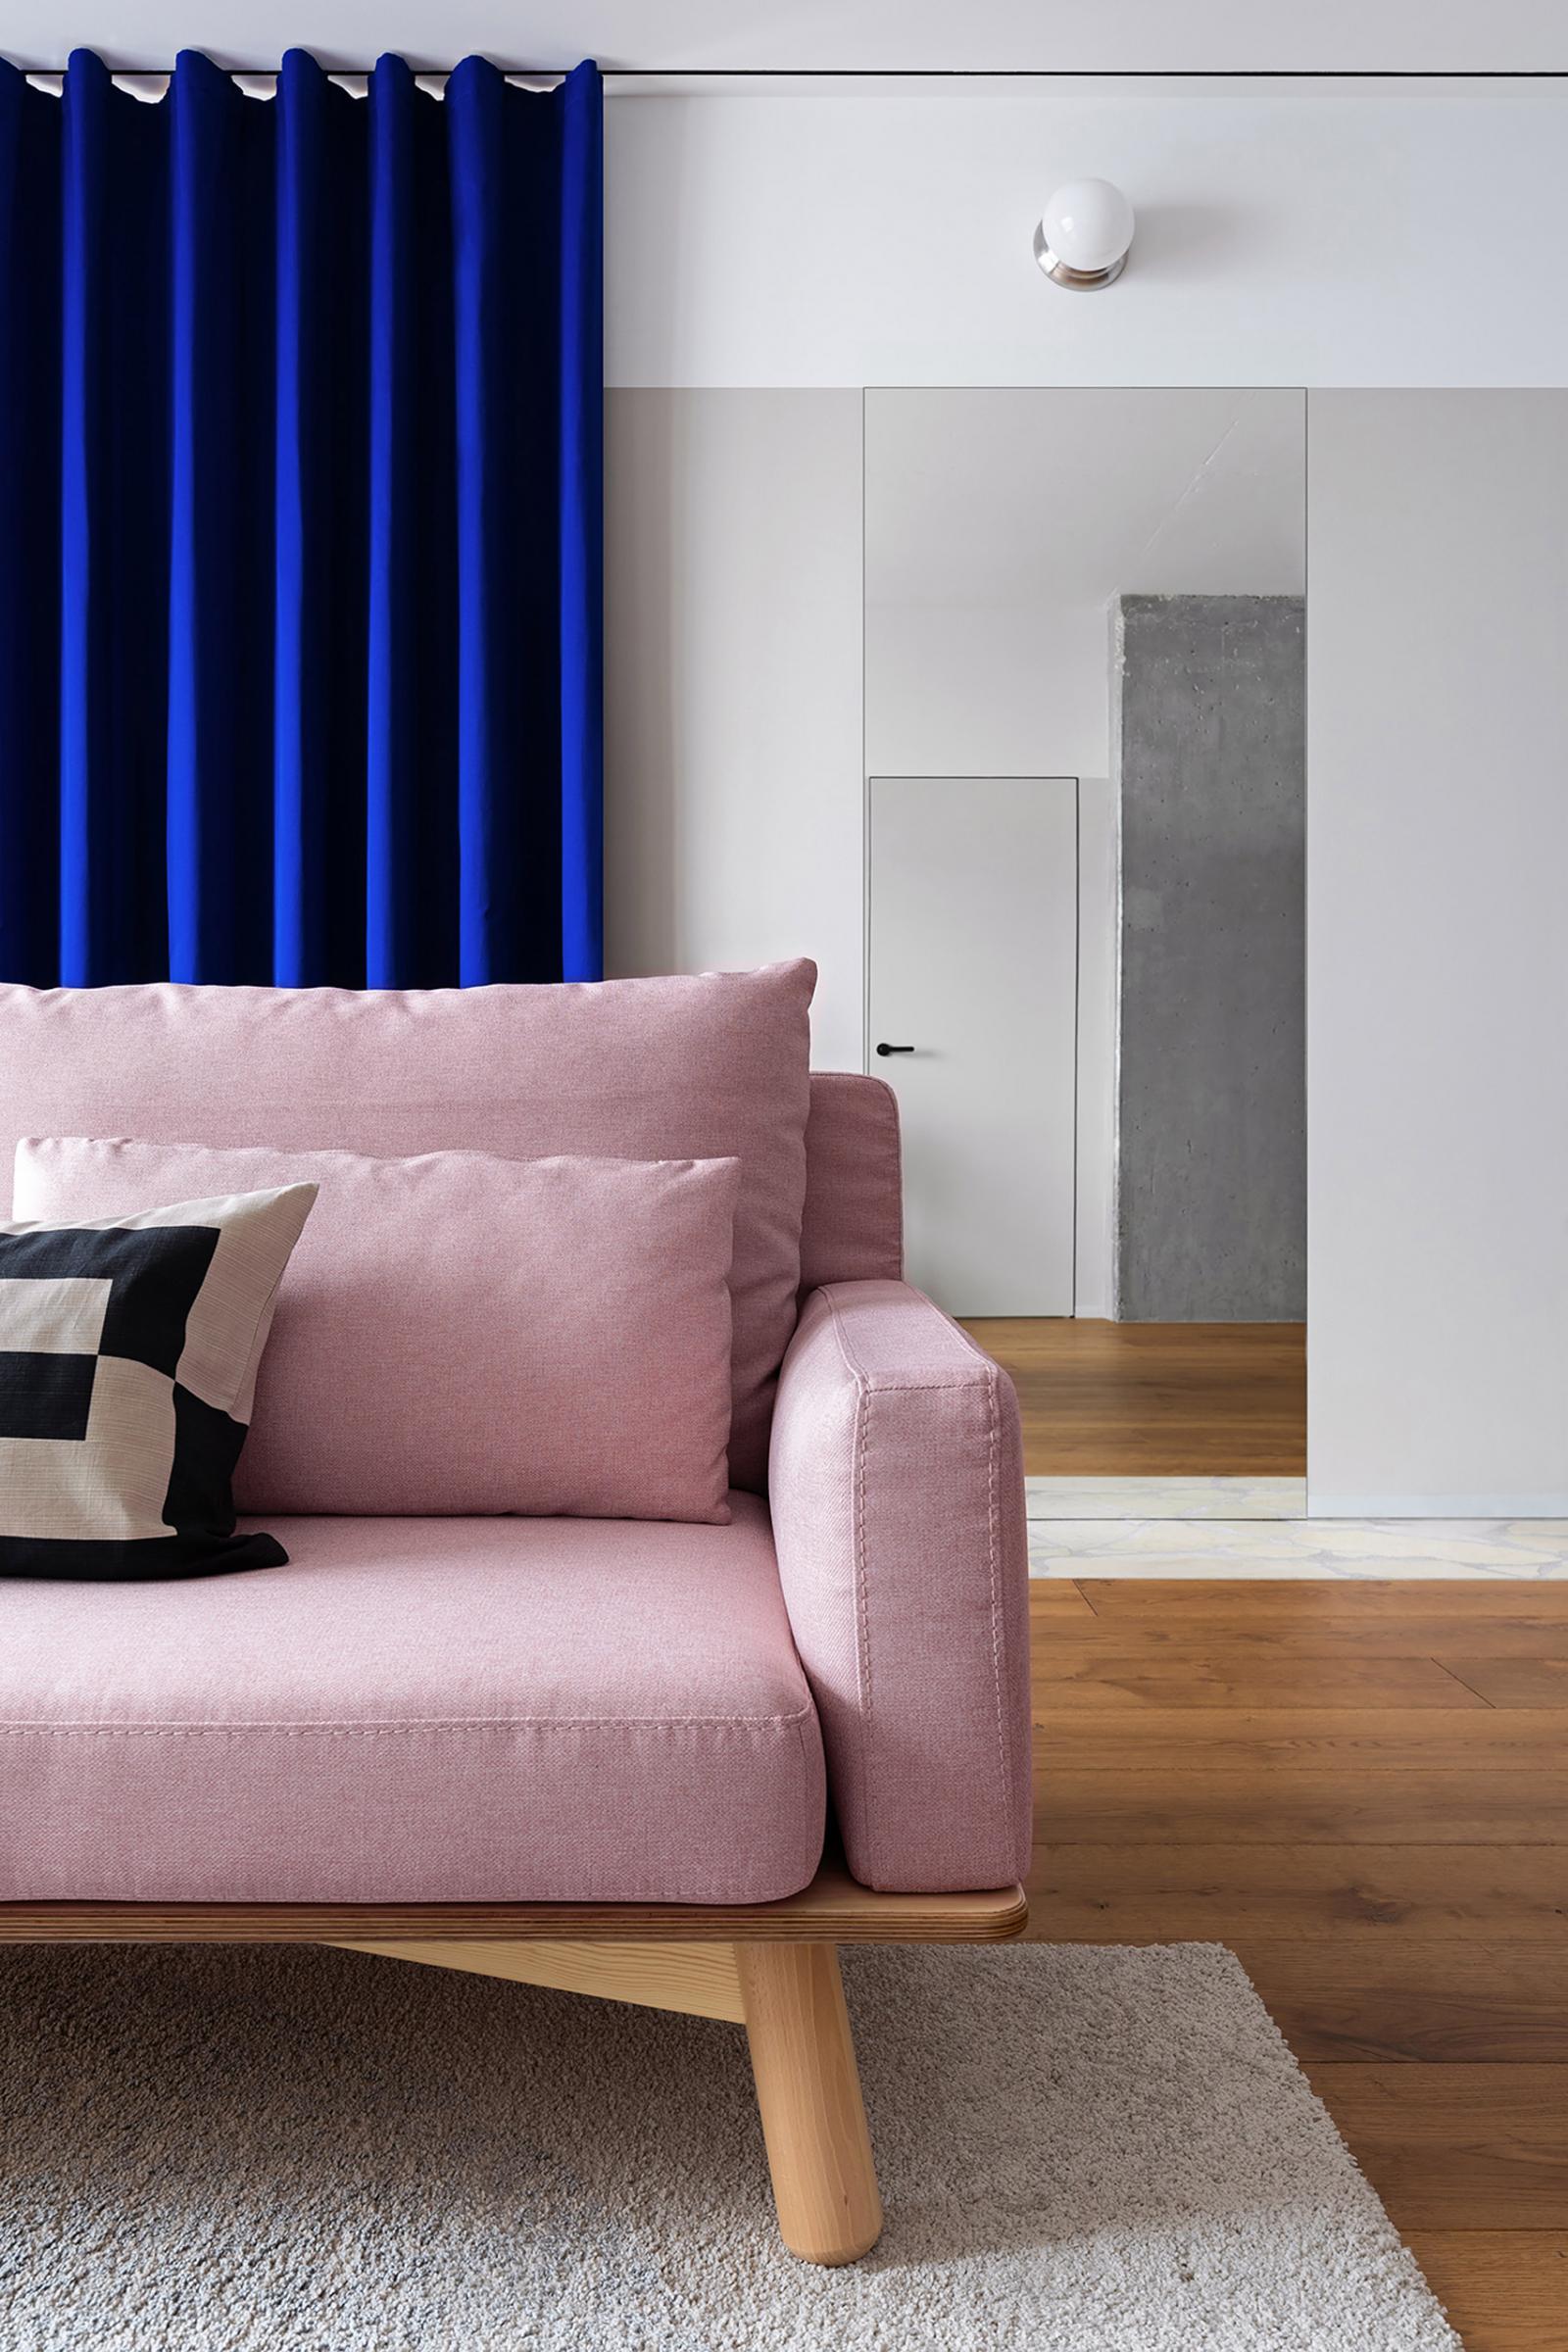 Hình ảnh một góc phòng khách căn hộ với sofa màu hồng tương phản rèm cửa màu xanh coban